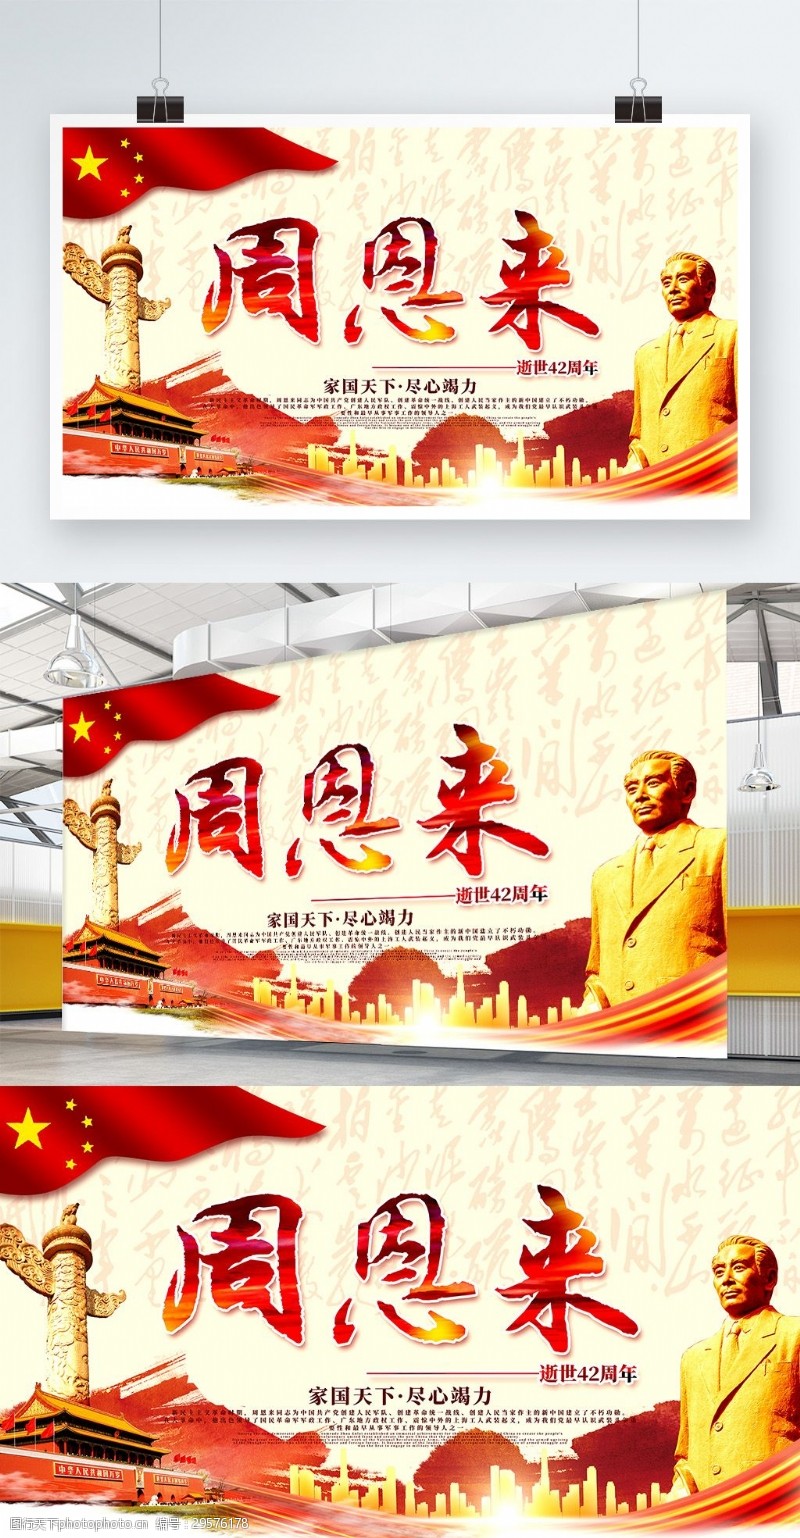 建党纪念日周恩来逝世42周年纪念日中国风建党海报